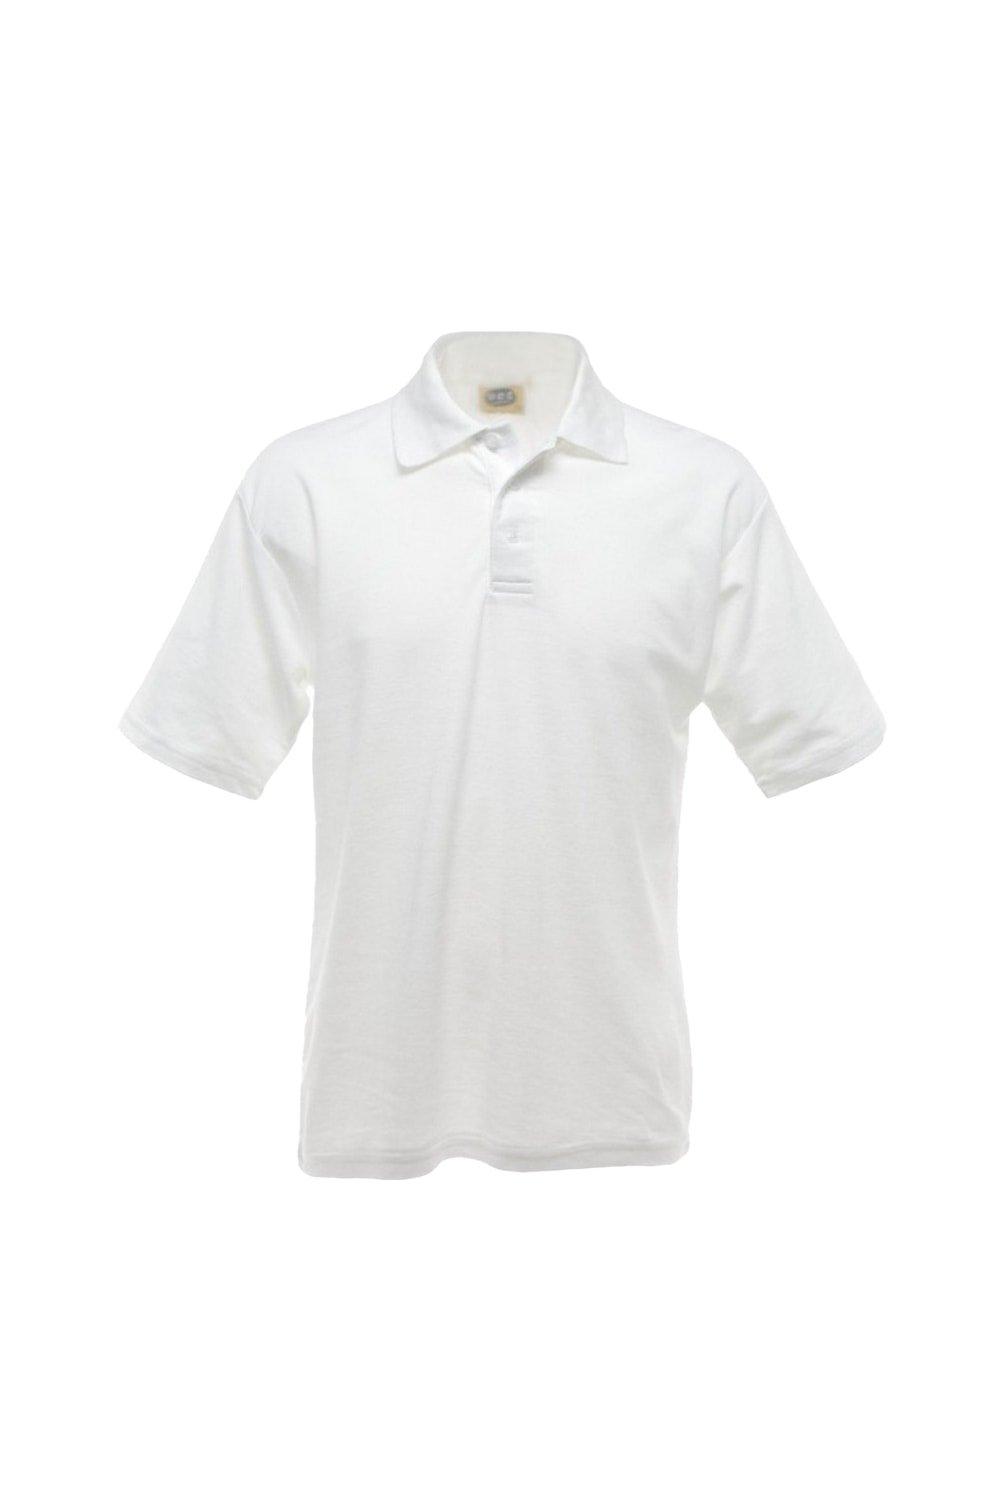 UCC 50 50 Однотонная рубашка-поло из пике с короткими рукавами Ultimate Clothing Collection, белый топливный фильтр для шланга stihl ms180 ms170 018 017 ms 180 170 5 шт лот запасная часть для бензопилы